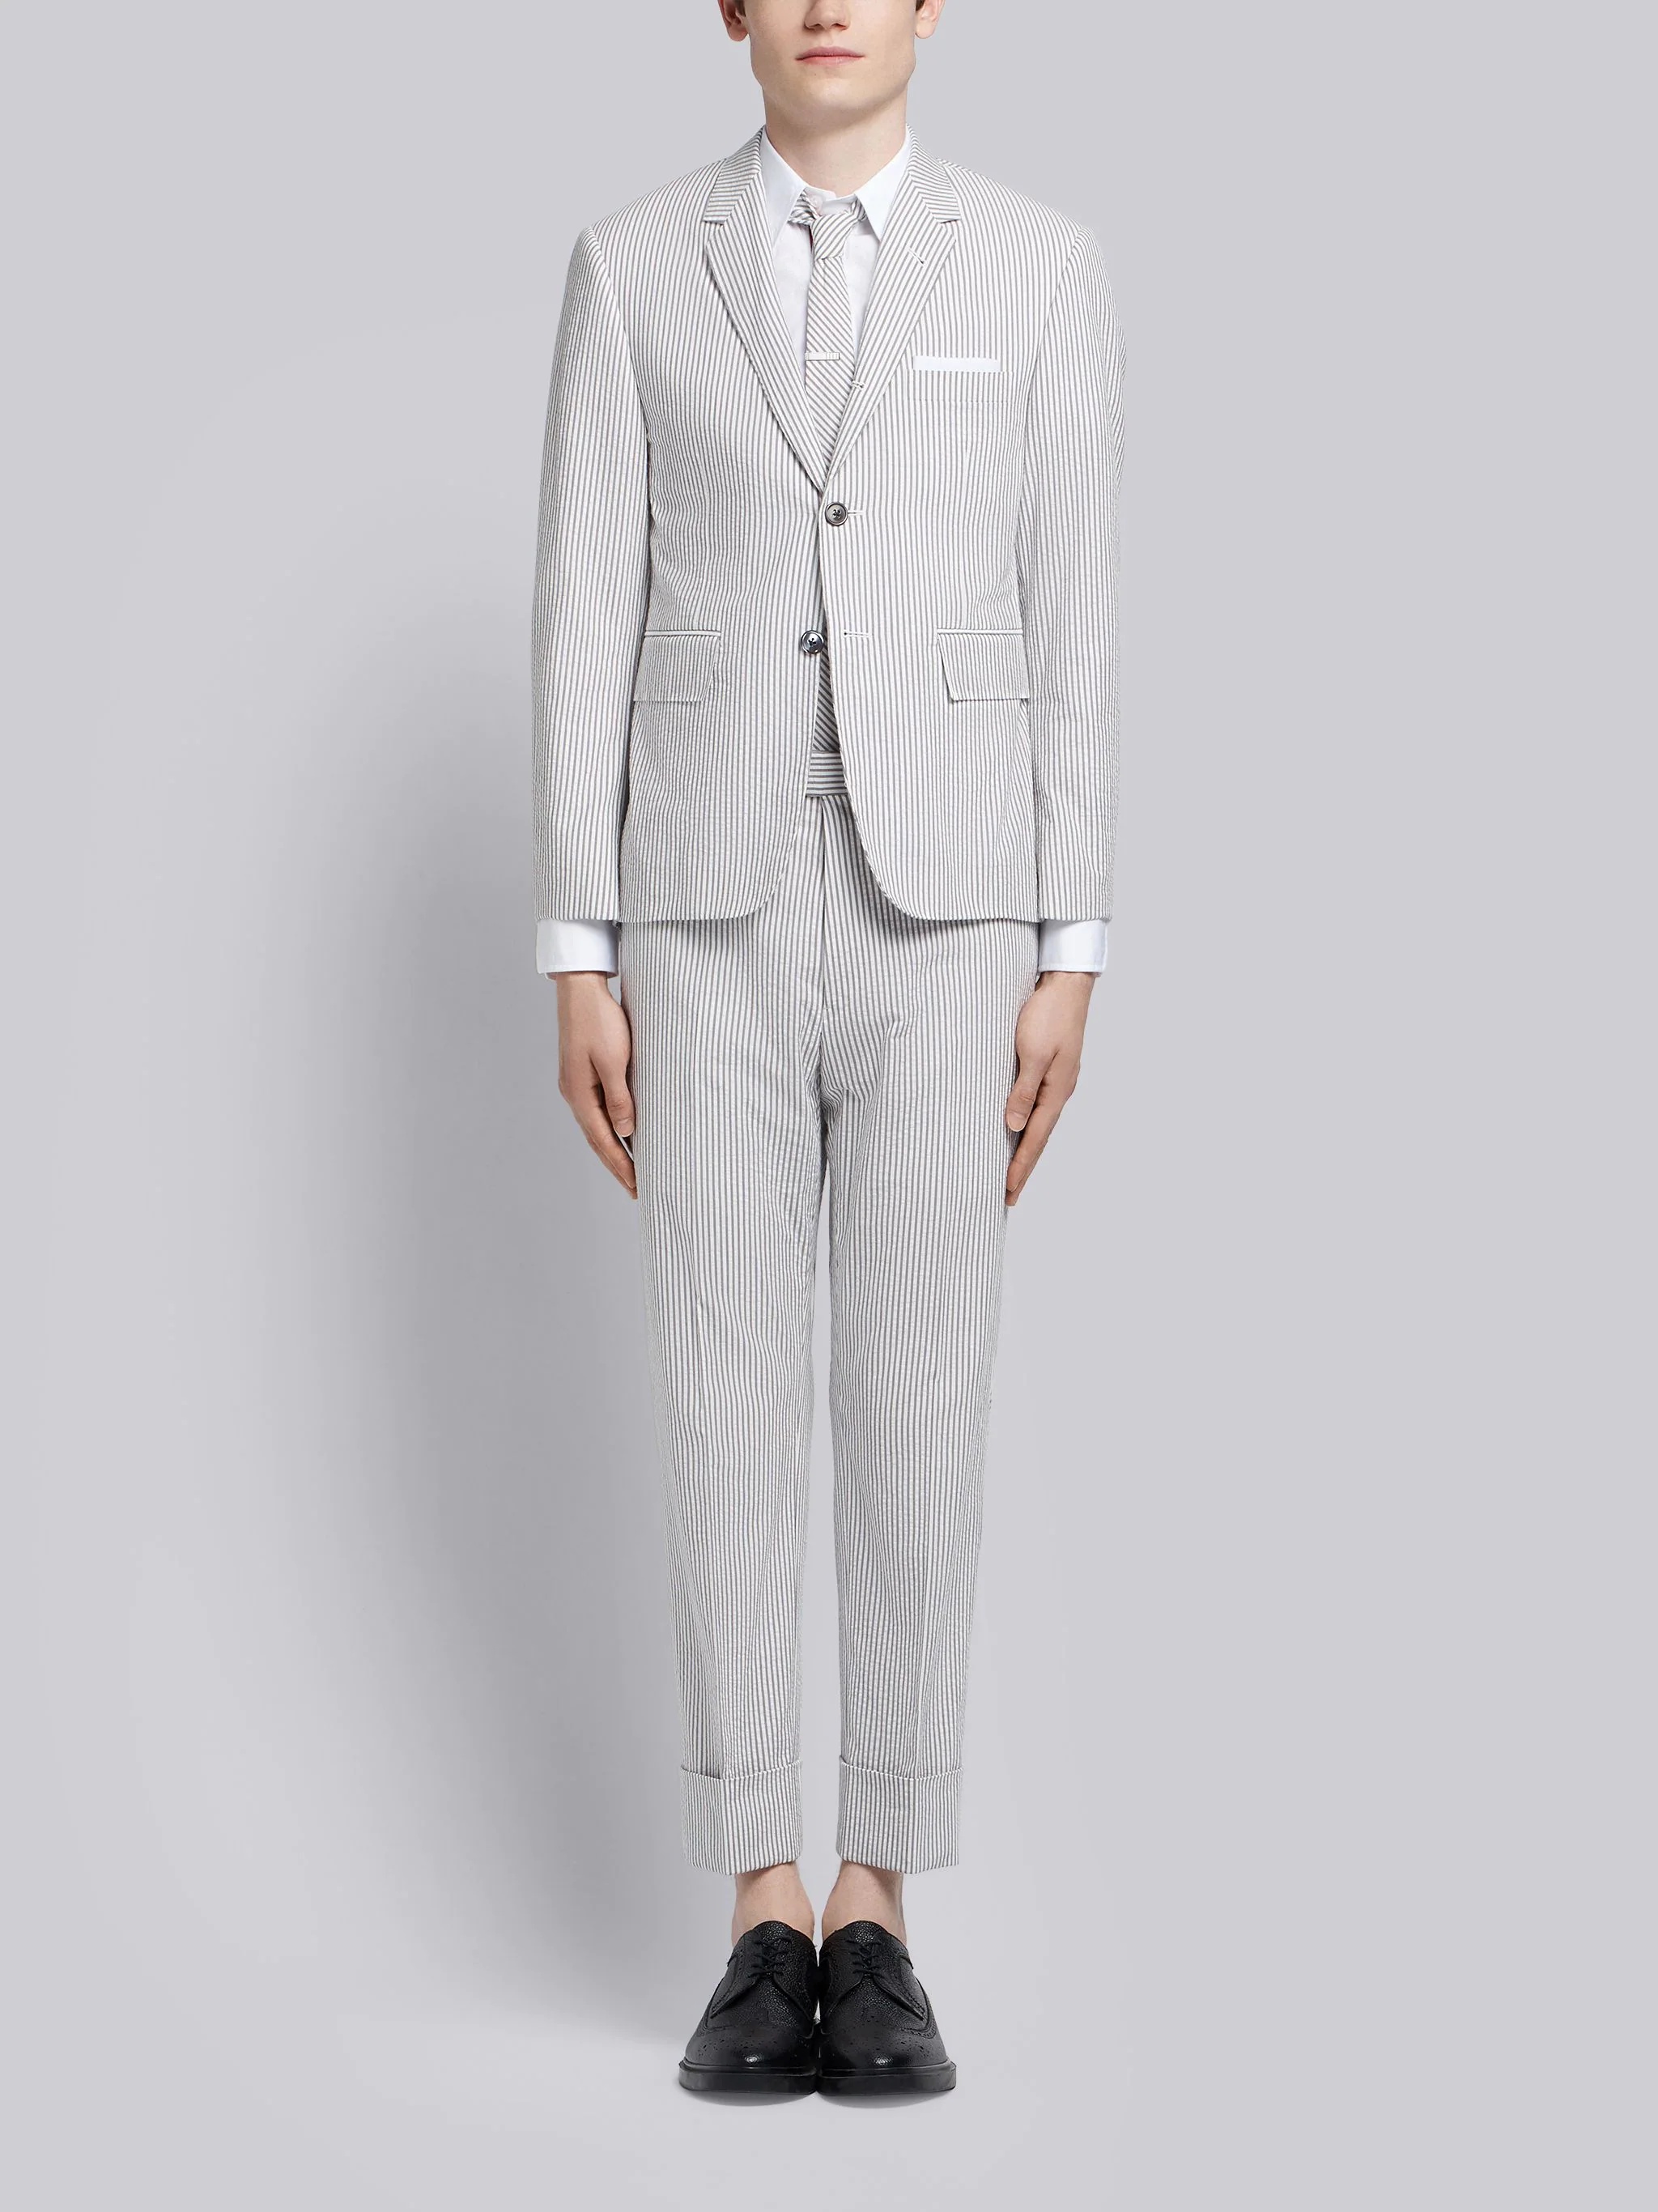 Medium Grey Seersucker Classic Suit and Tie - 1